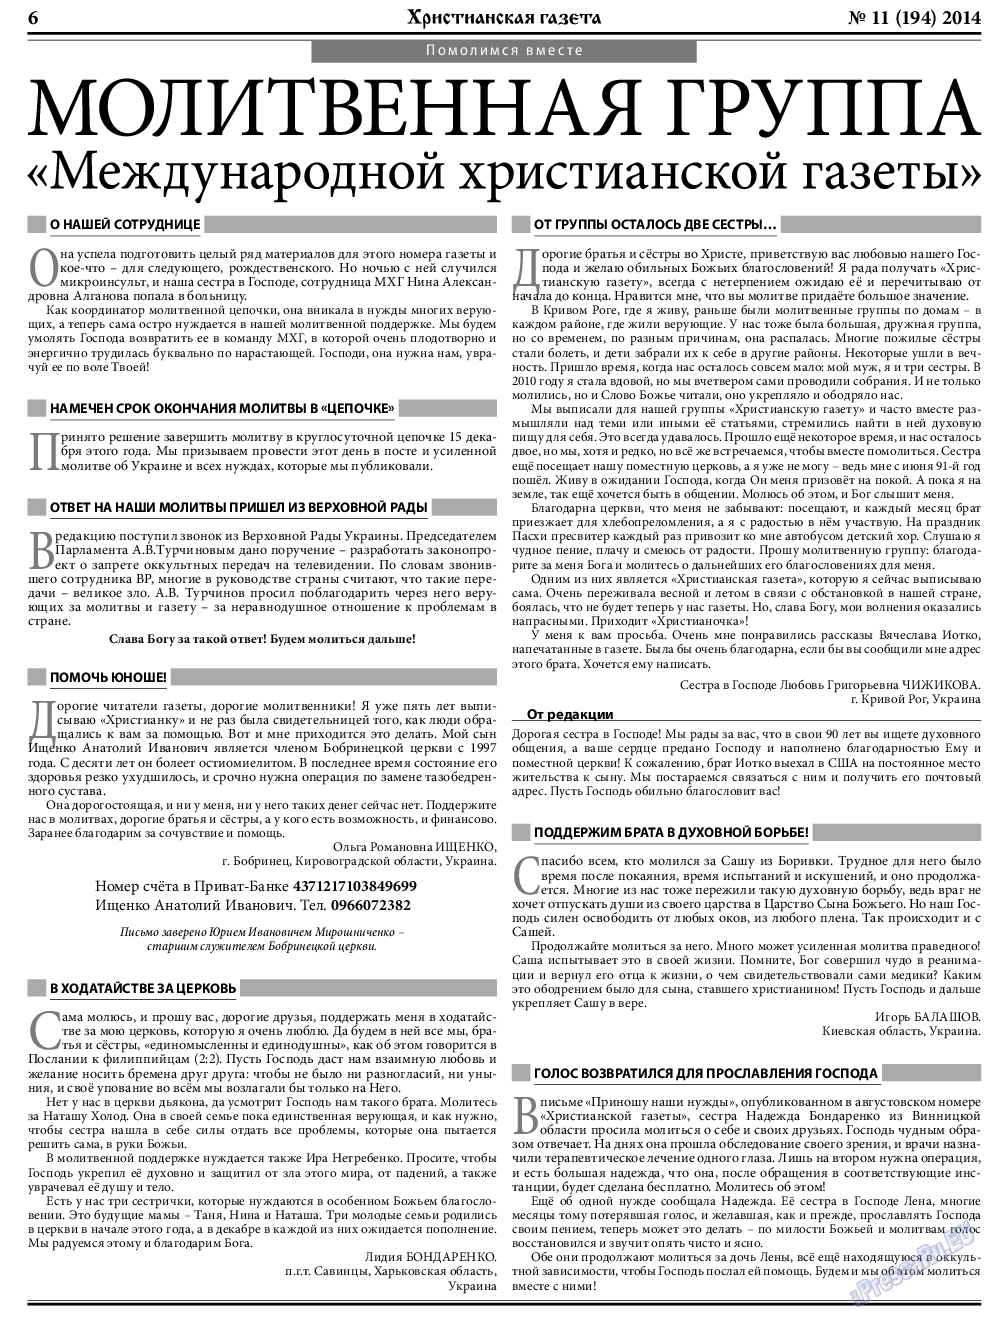 Христианская газета, газета. 2014 №11 стр.6